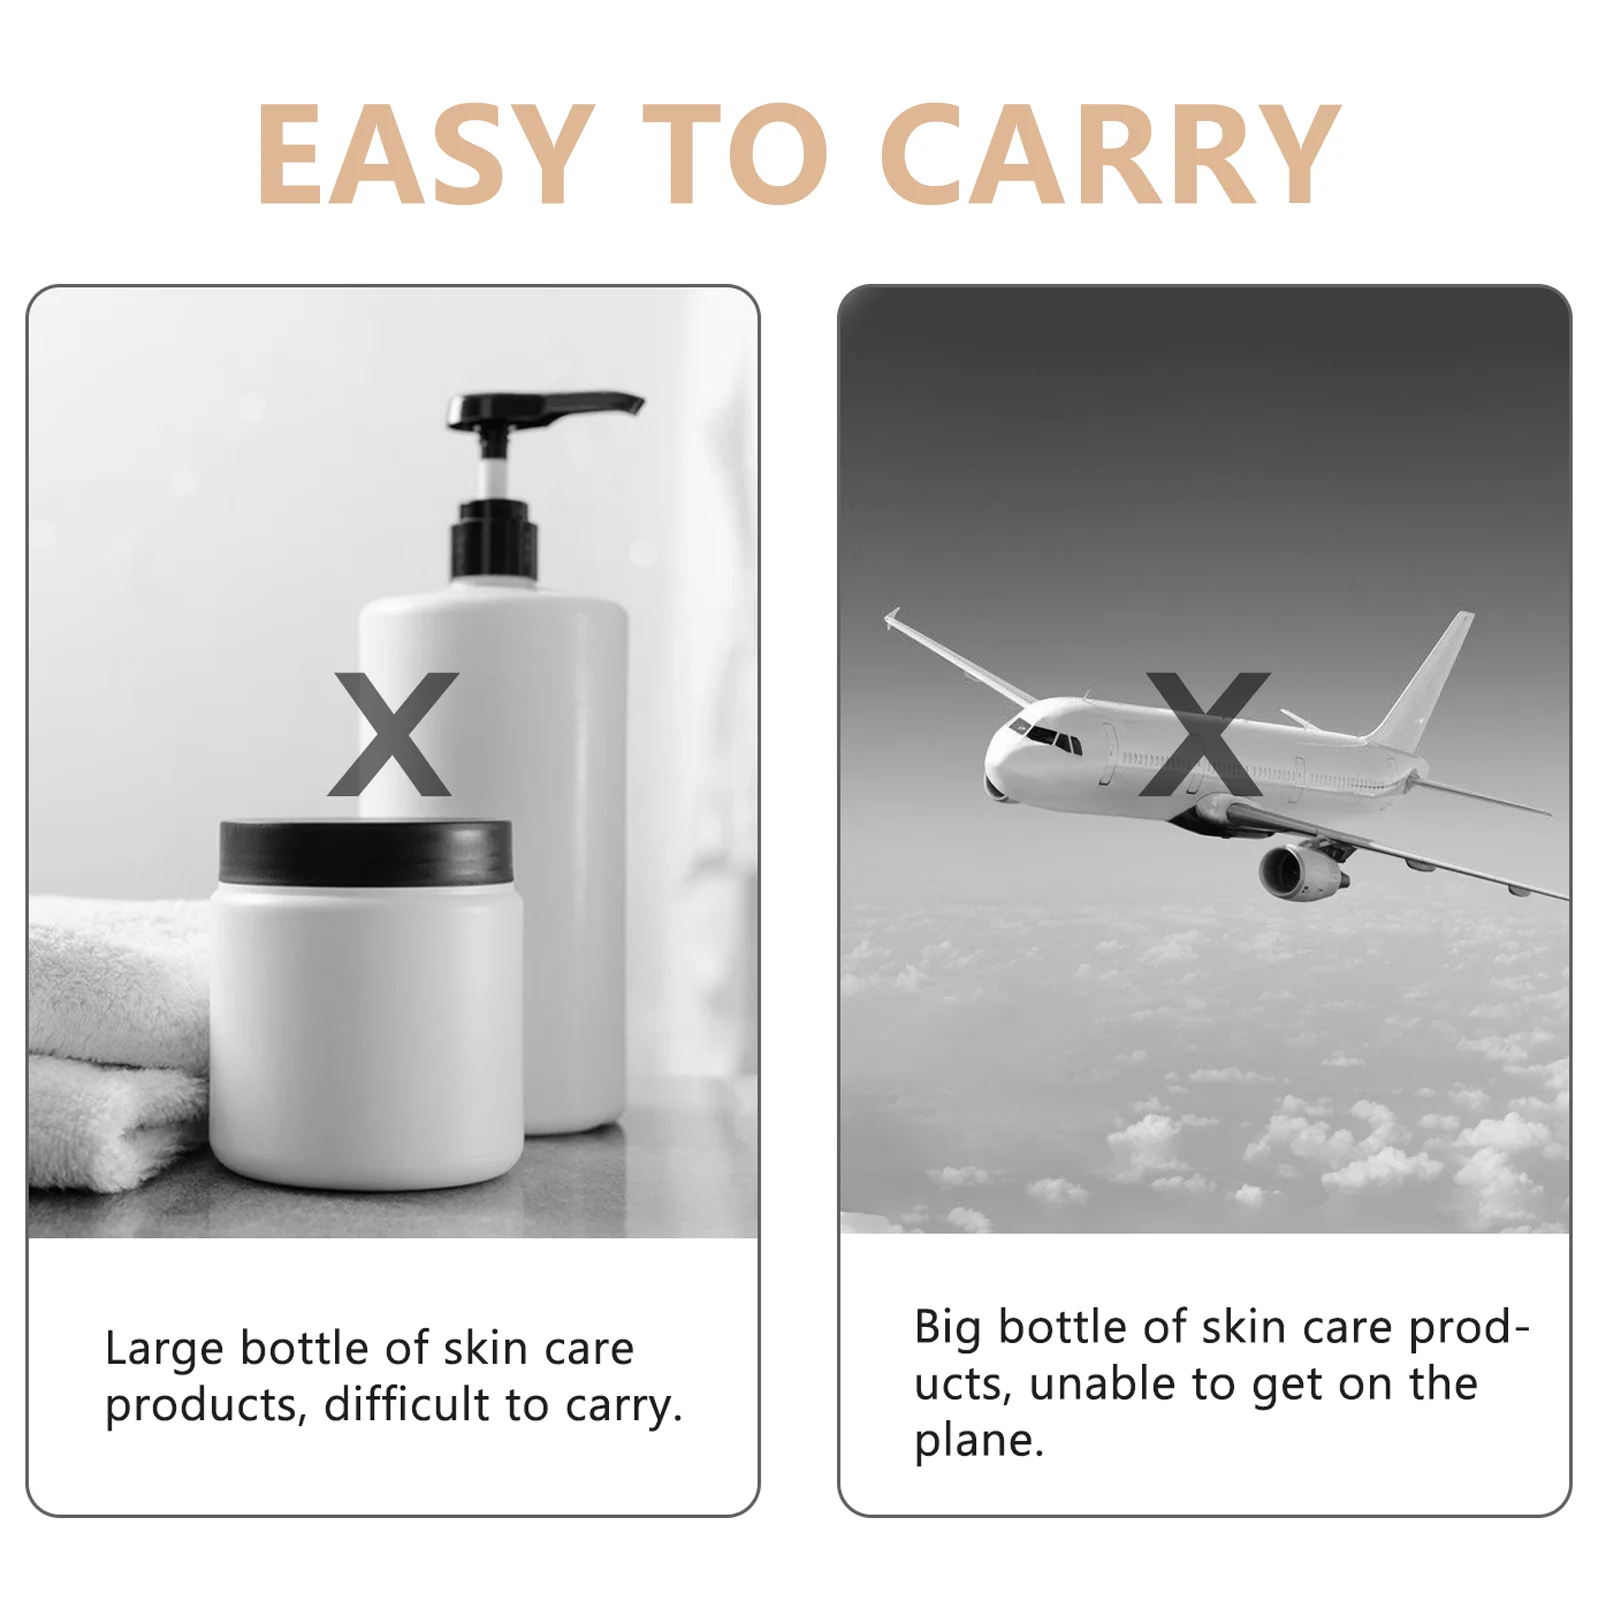 3 шт. Силиконовый скруббер для мытья тела в бутылках для путешествий, контейнер для туалетных принадлежностей, разлив лосьона в бутылки Изображение 4